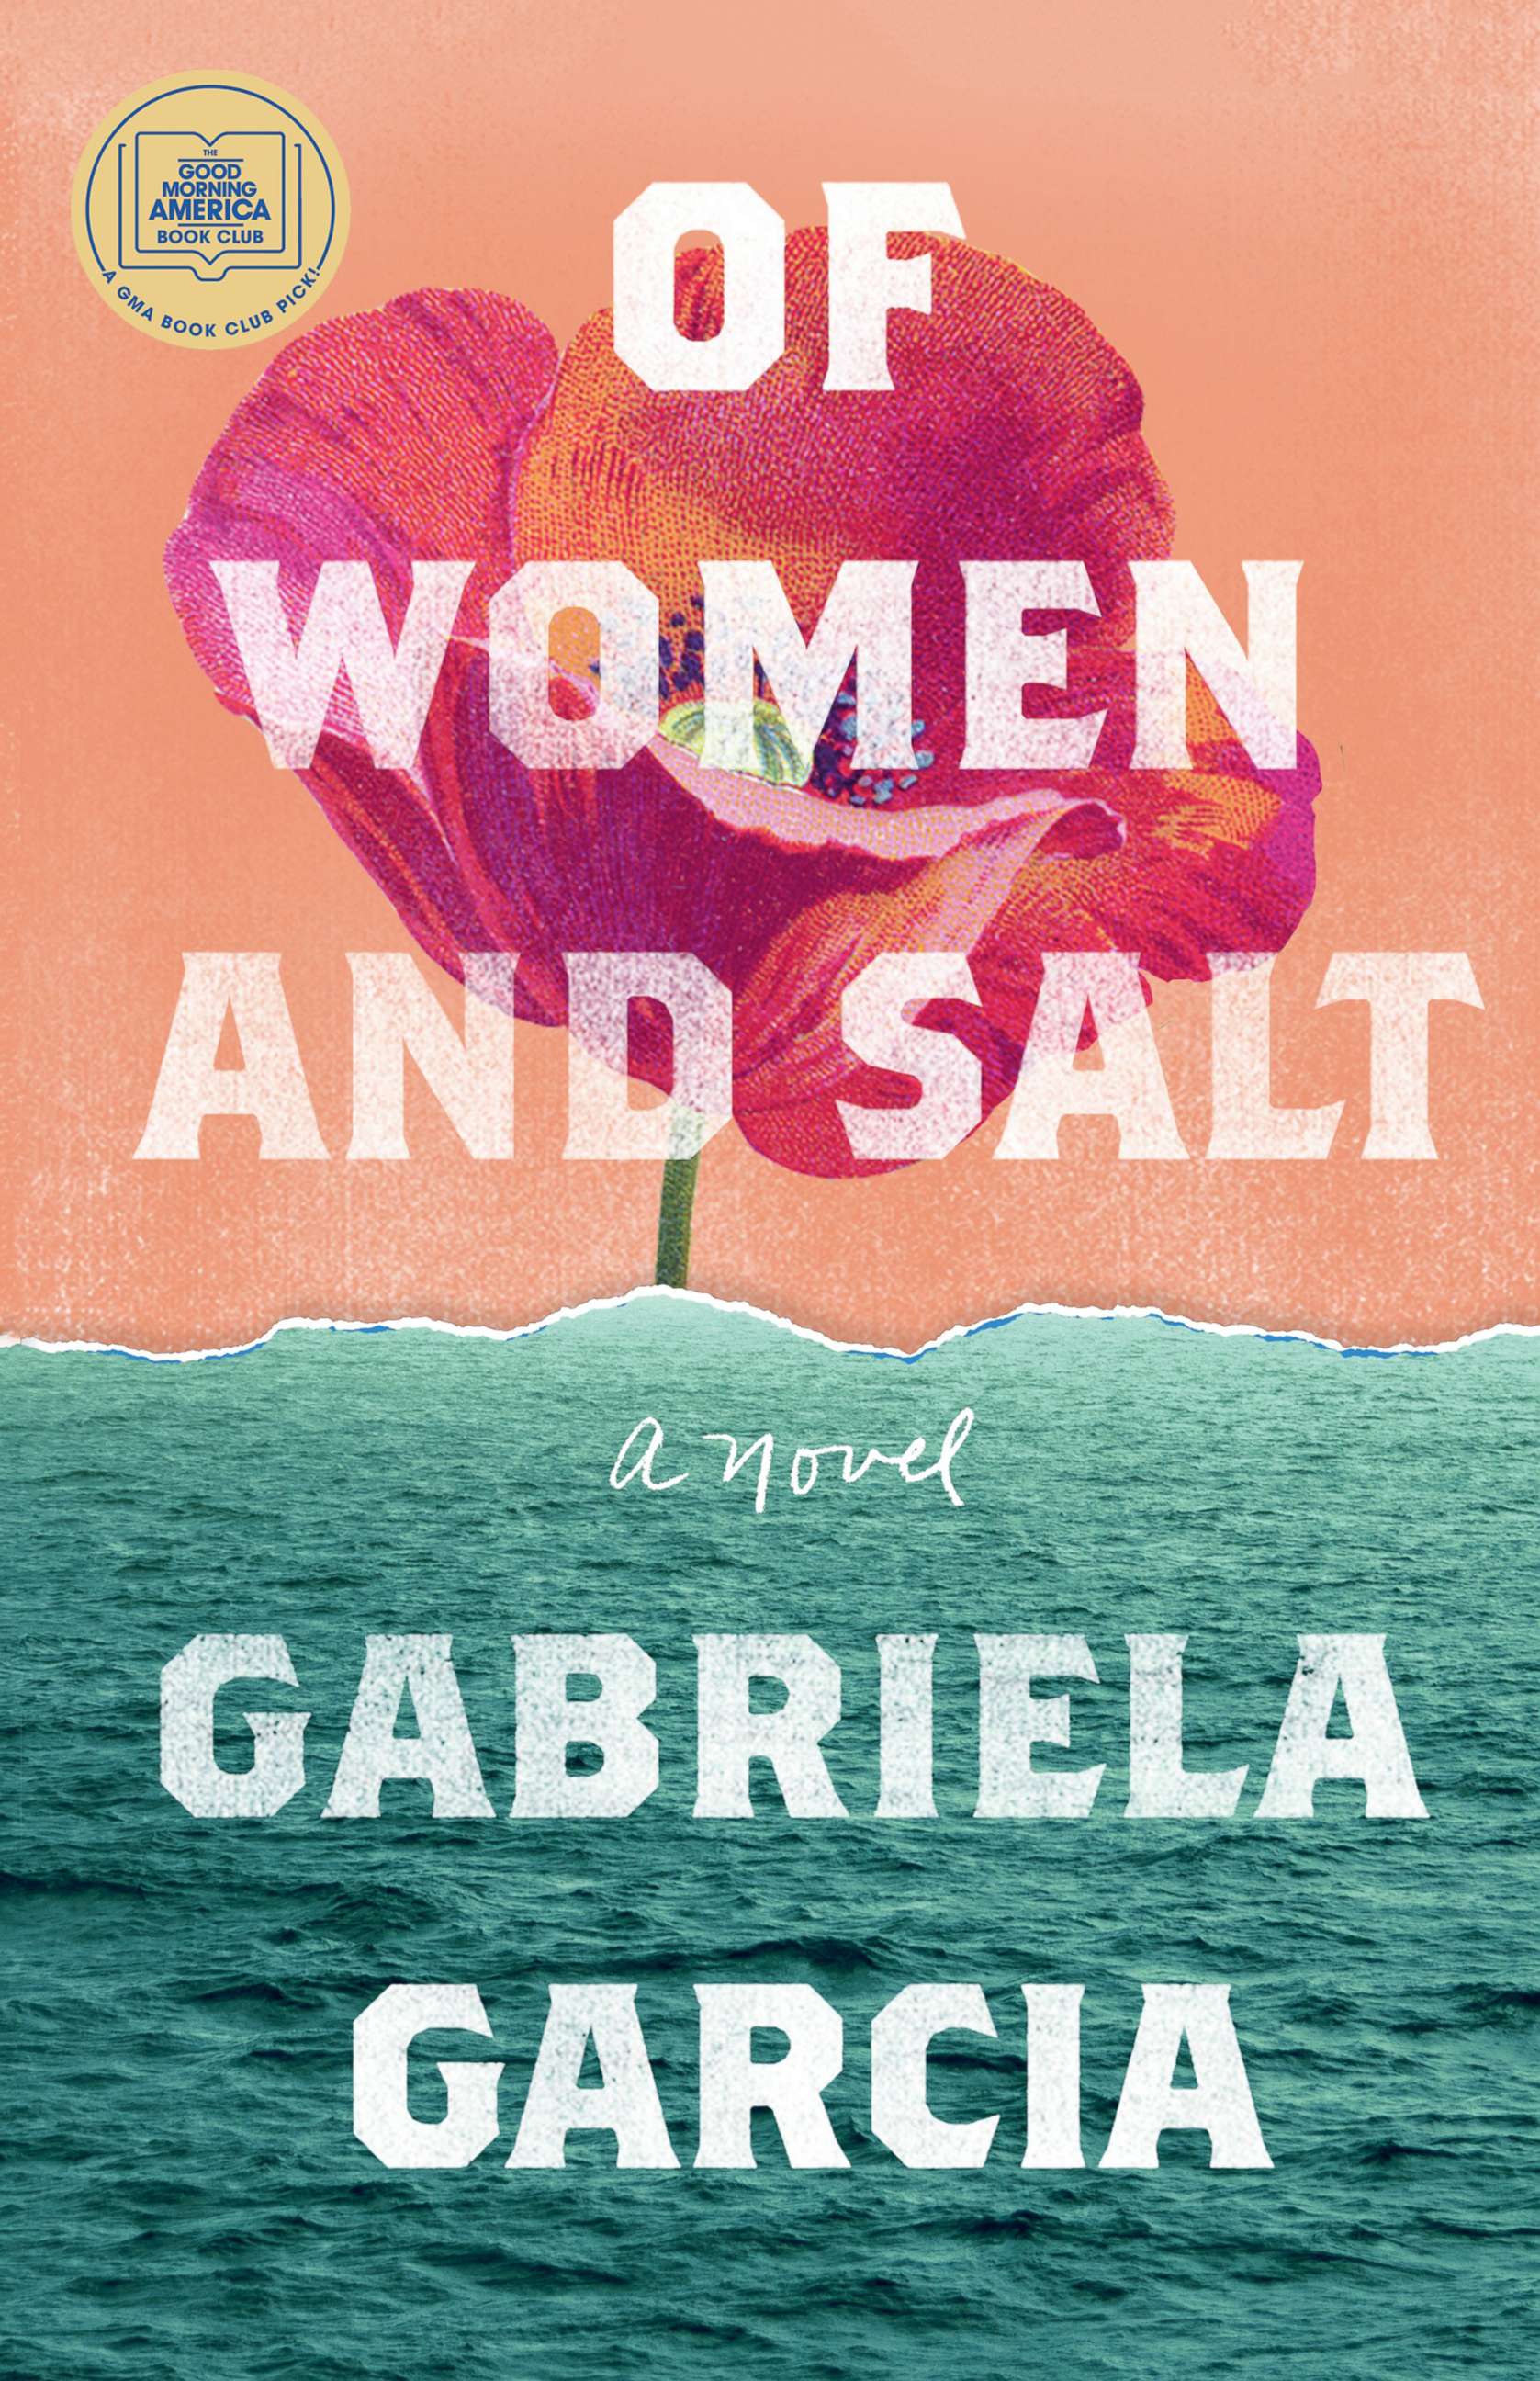 'Of Women and Salt' by Gabriela Garcia